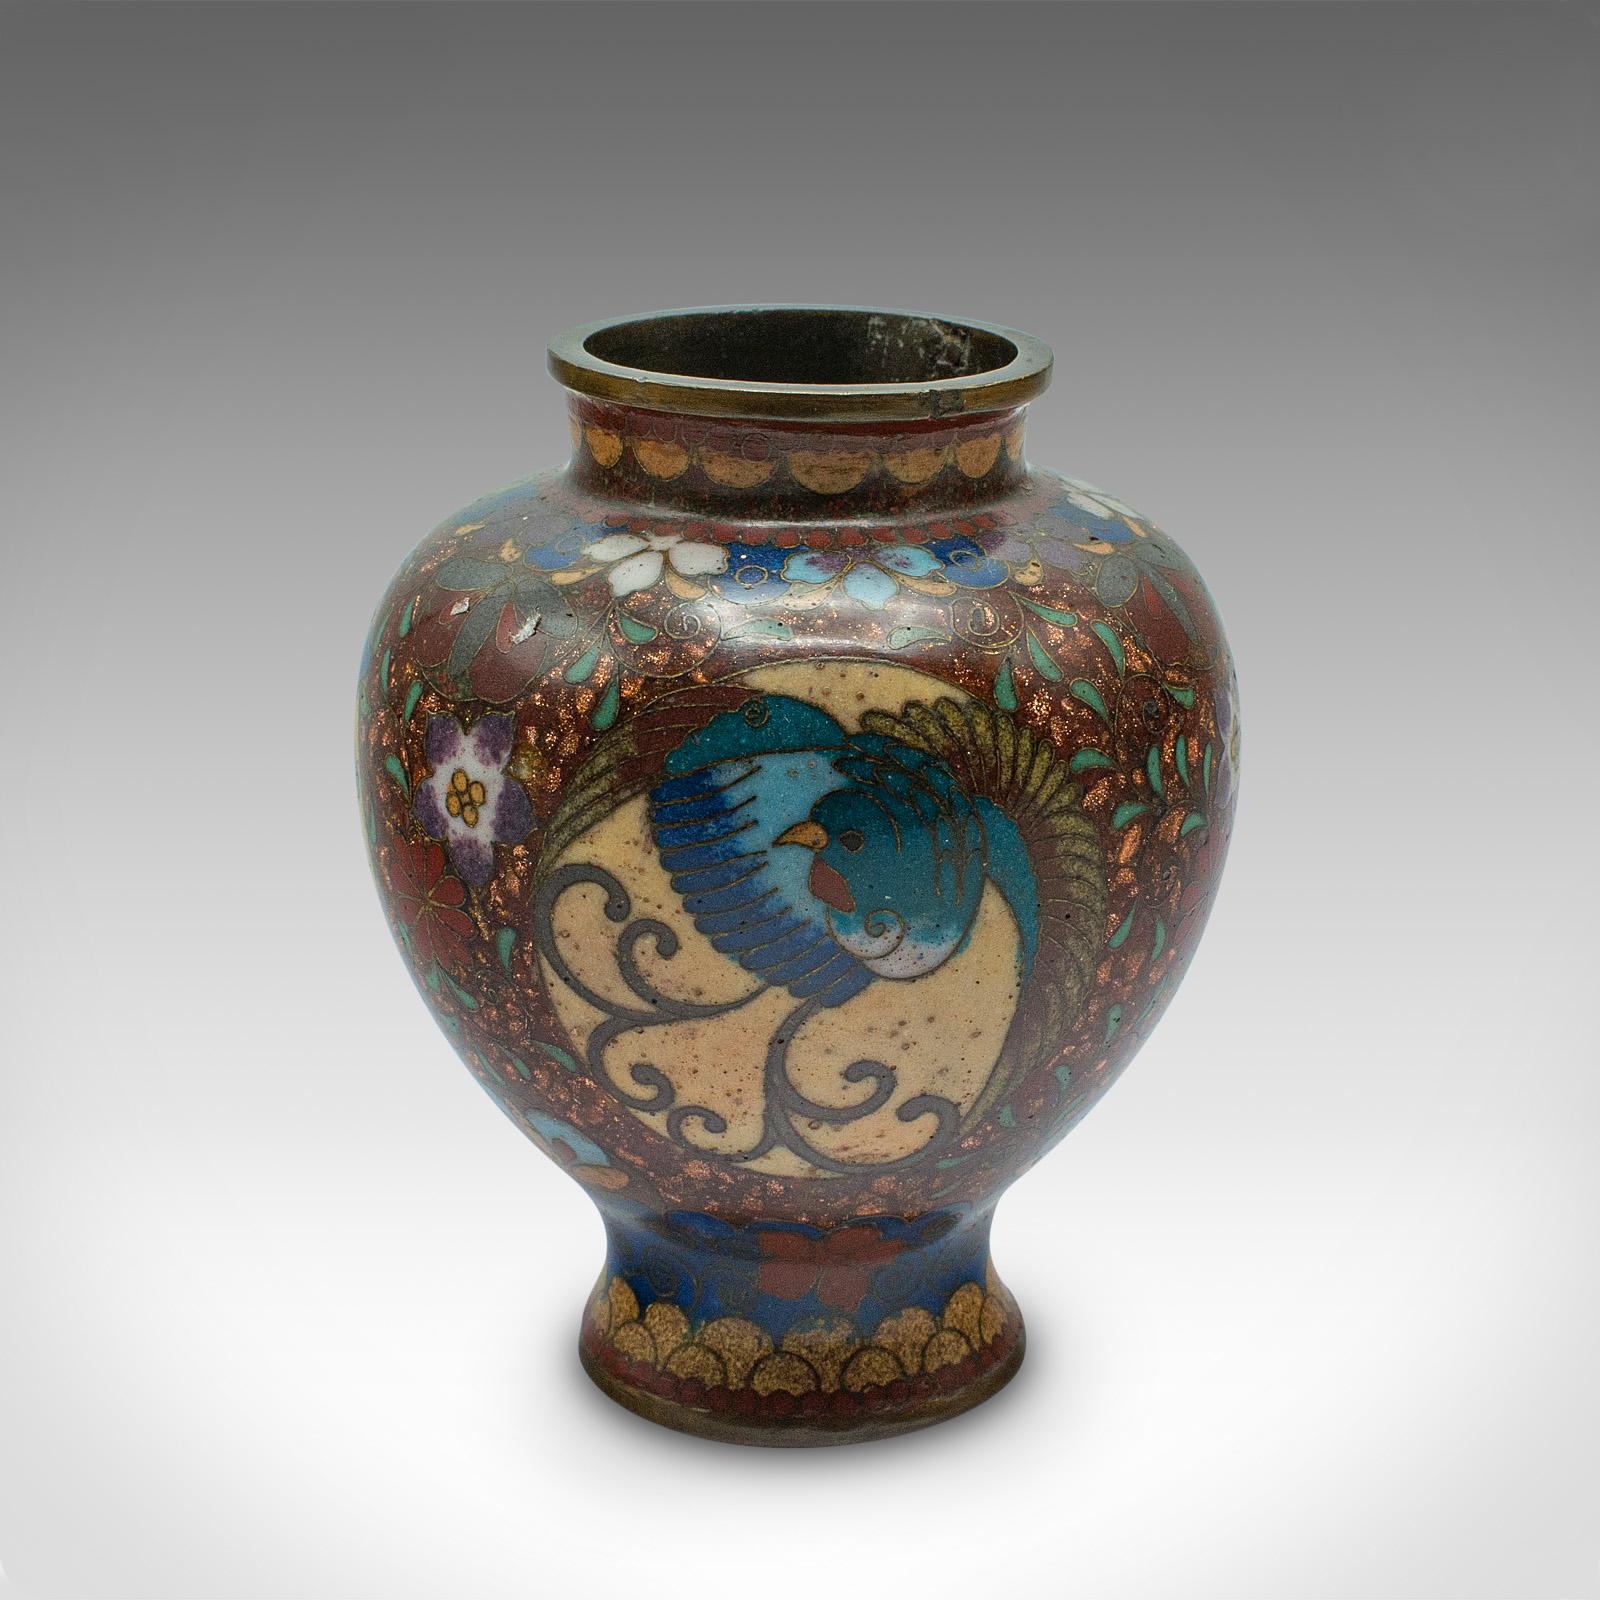 
Dies ist eine kleine Vintage-Sträußchen-Vase. Eine chinesische Cloisonné-Urne aus der Zeit des Art déco, um 1940.

Zierliche, aber verzierte Vase mit charmantem Dekorationswert
Zeigt eine wünschenswerte gealterte Patina und in gutem